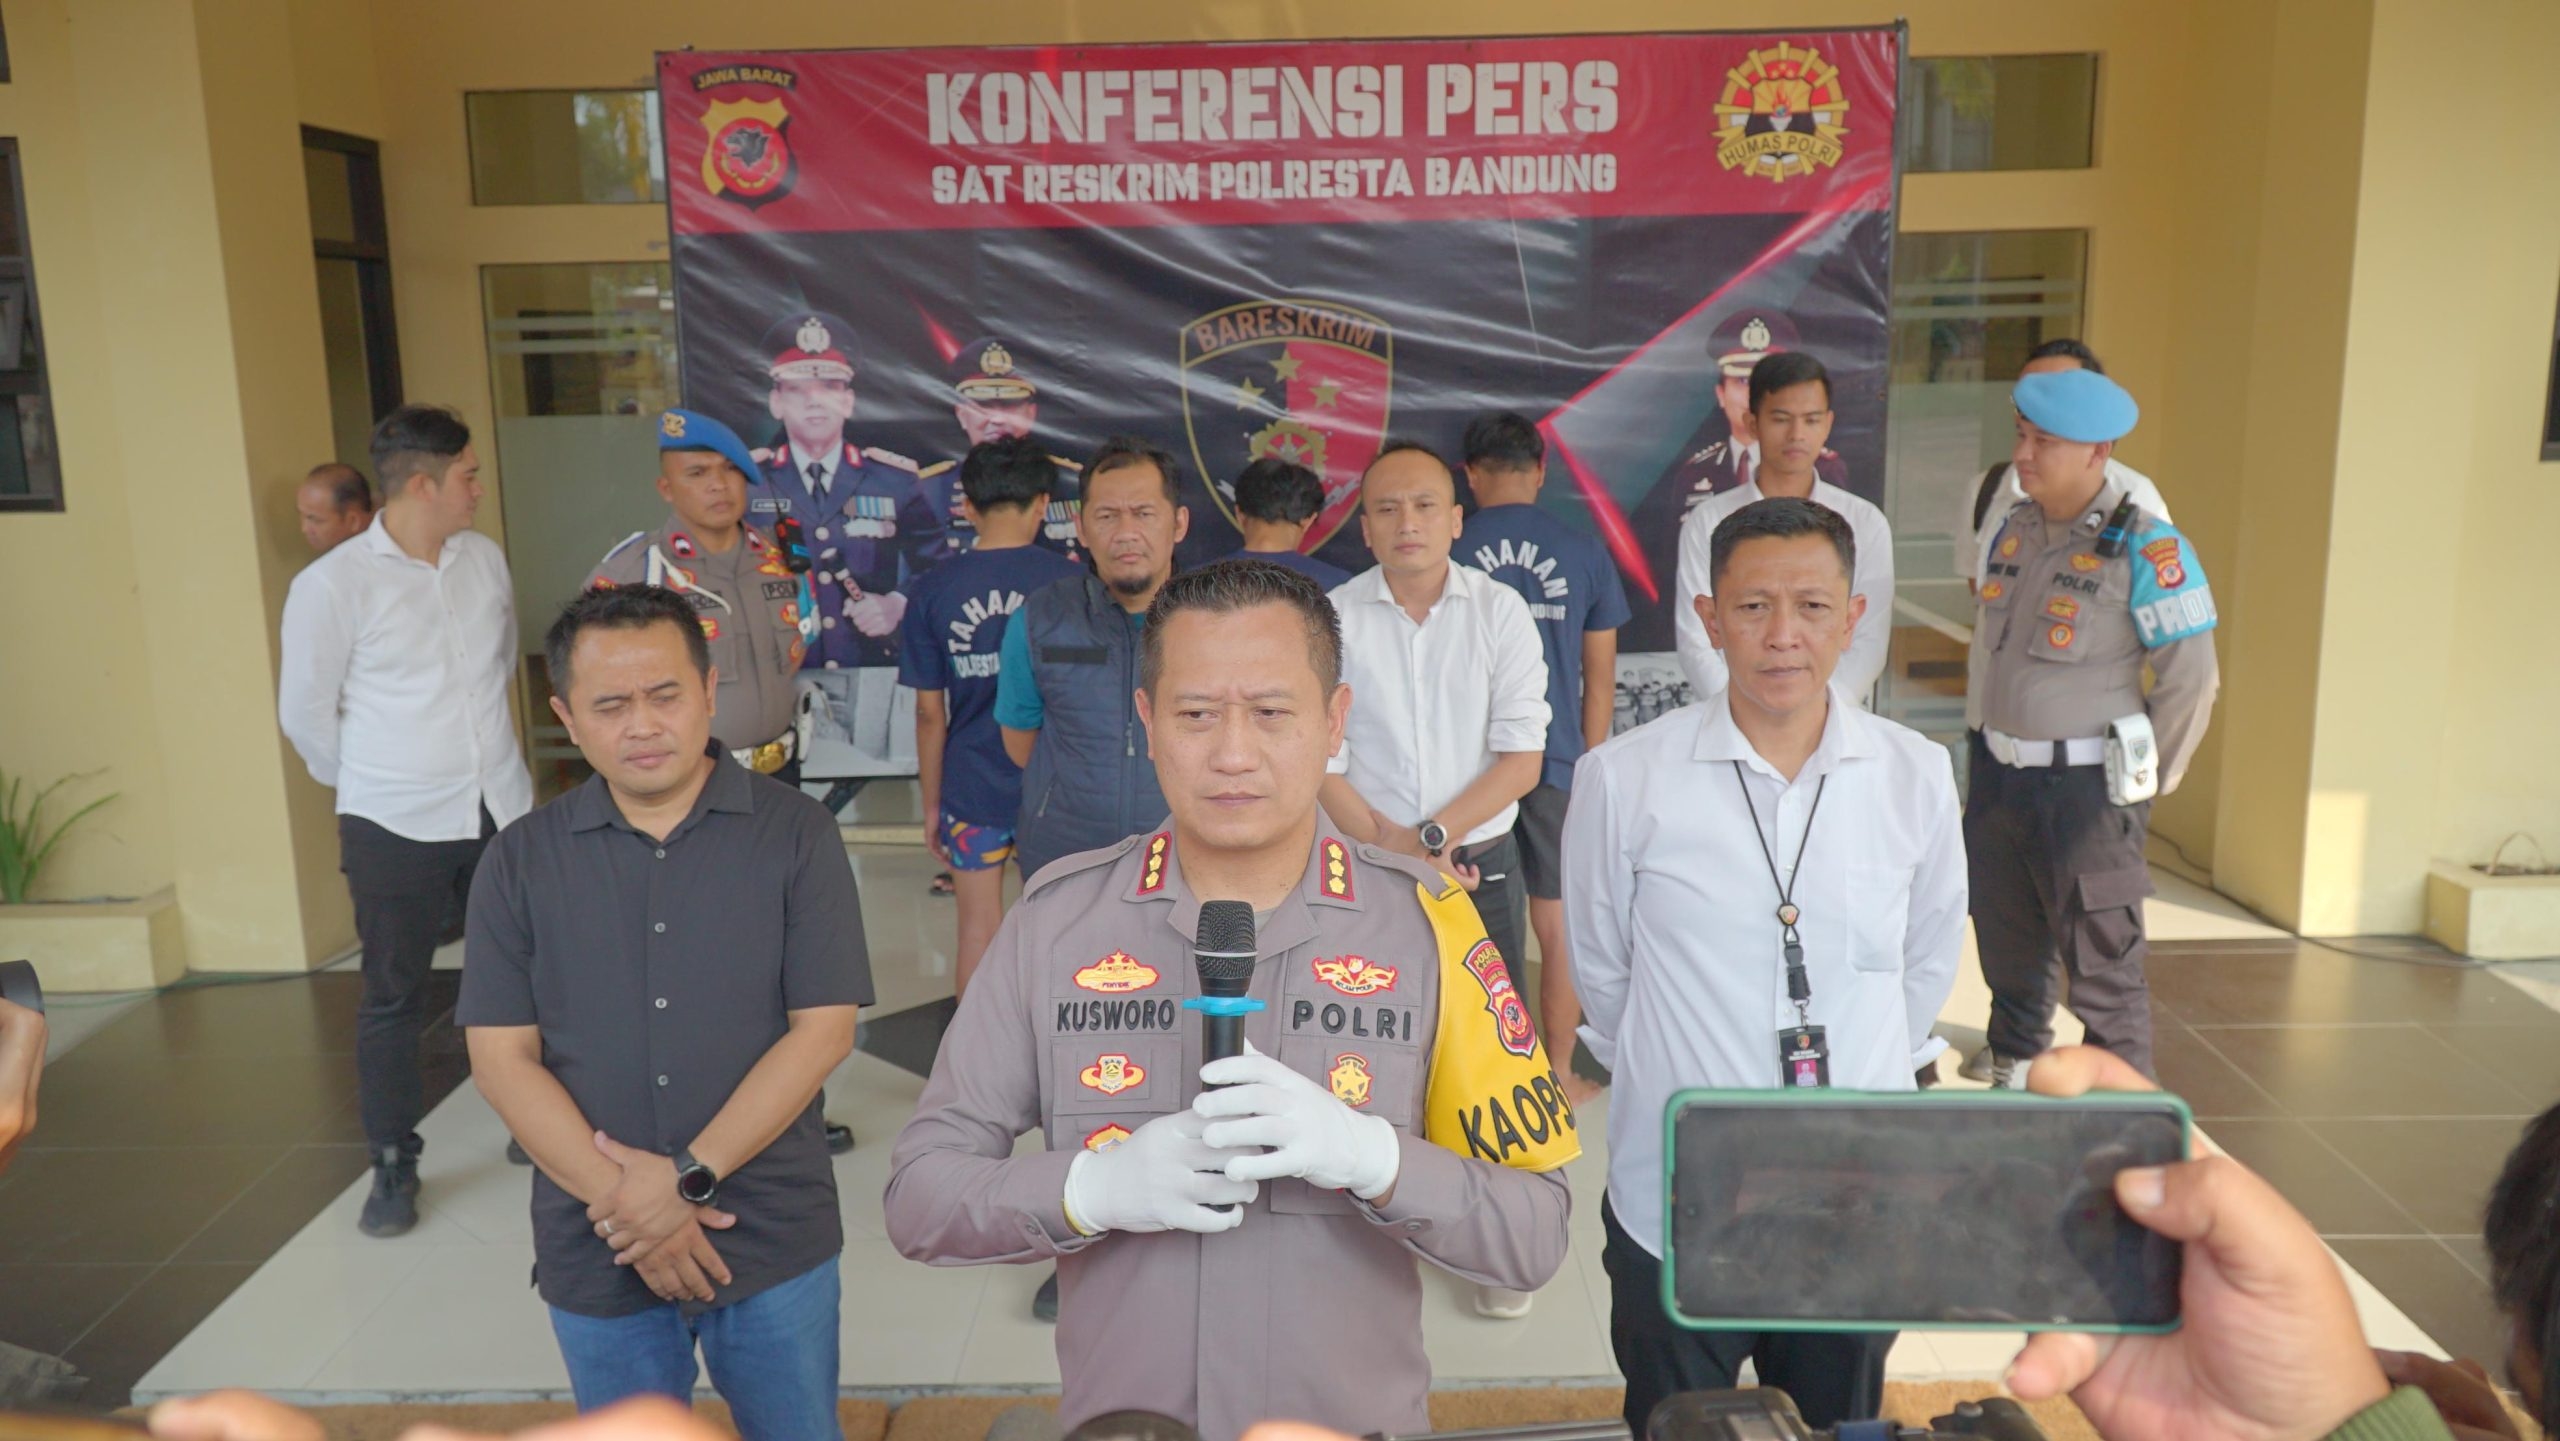 Kurang Dari 24 Jam, Polresta Bandung Berhasil Menangkap Para Pelaku Pembacokan Yang Terjadi di Cicalengka